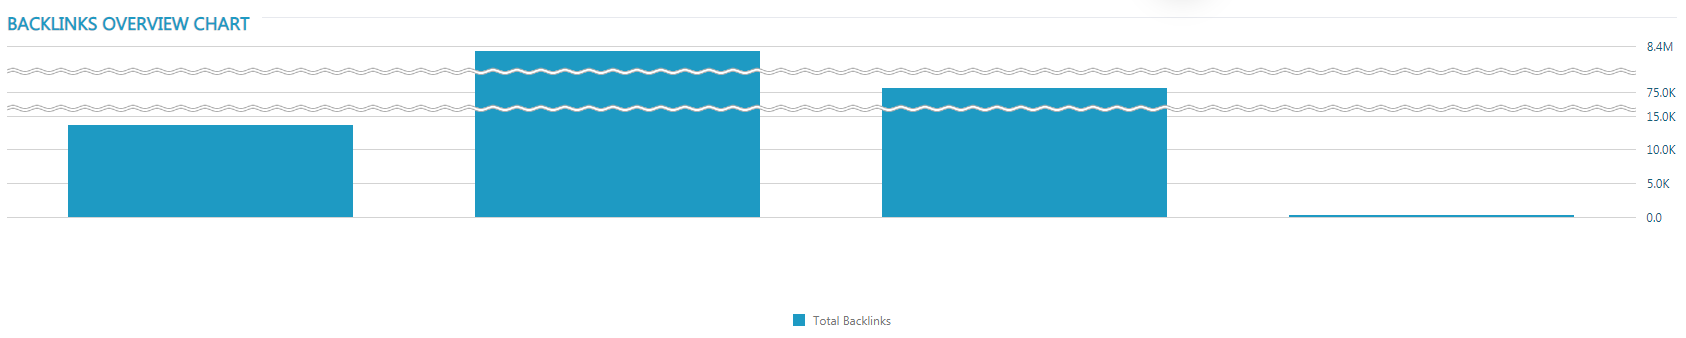 total backlinks graph rankactivep